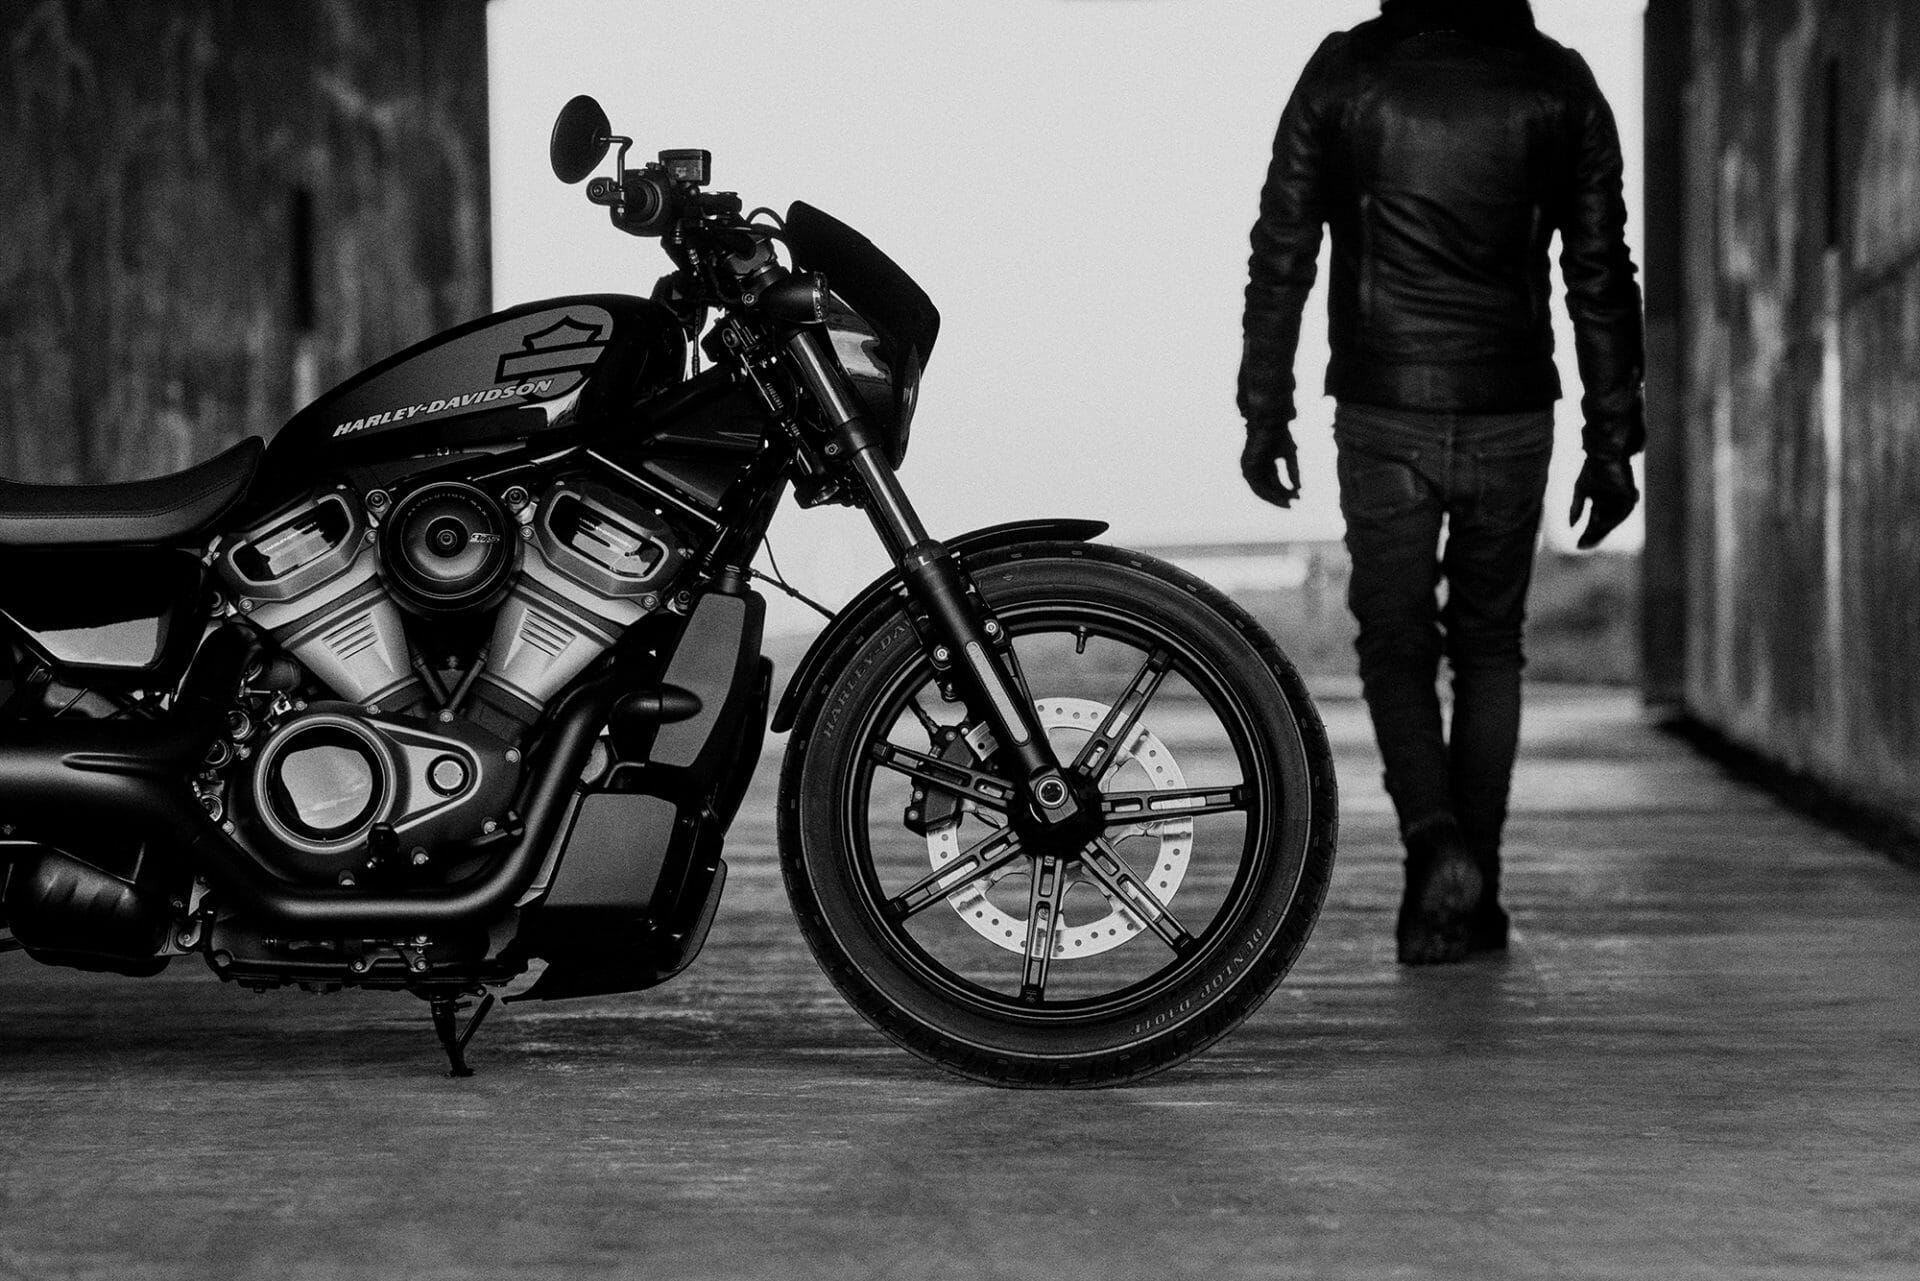 Harley-Davidson Nightster presented
- MOTORCYCLES.NEWS via @motorradnachrichten